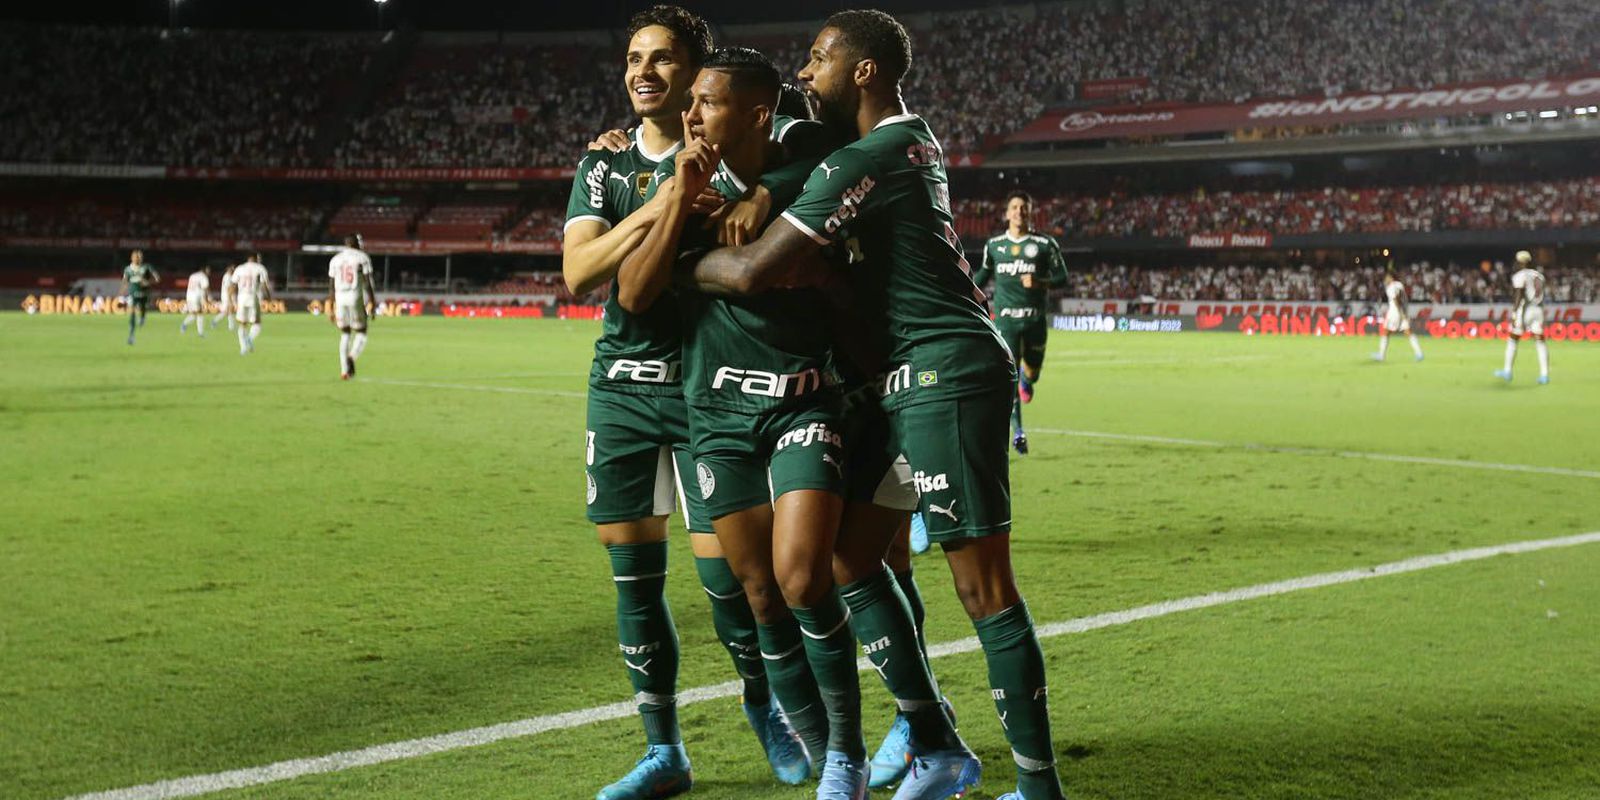 Rony scores and guarantees Palmeiras victory over São Paulo